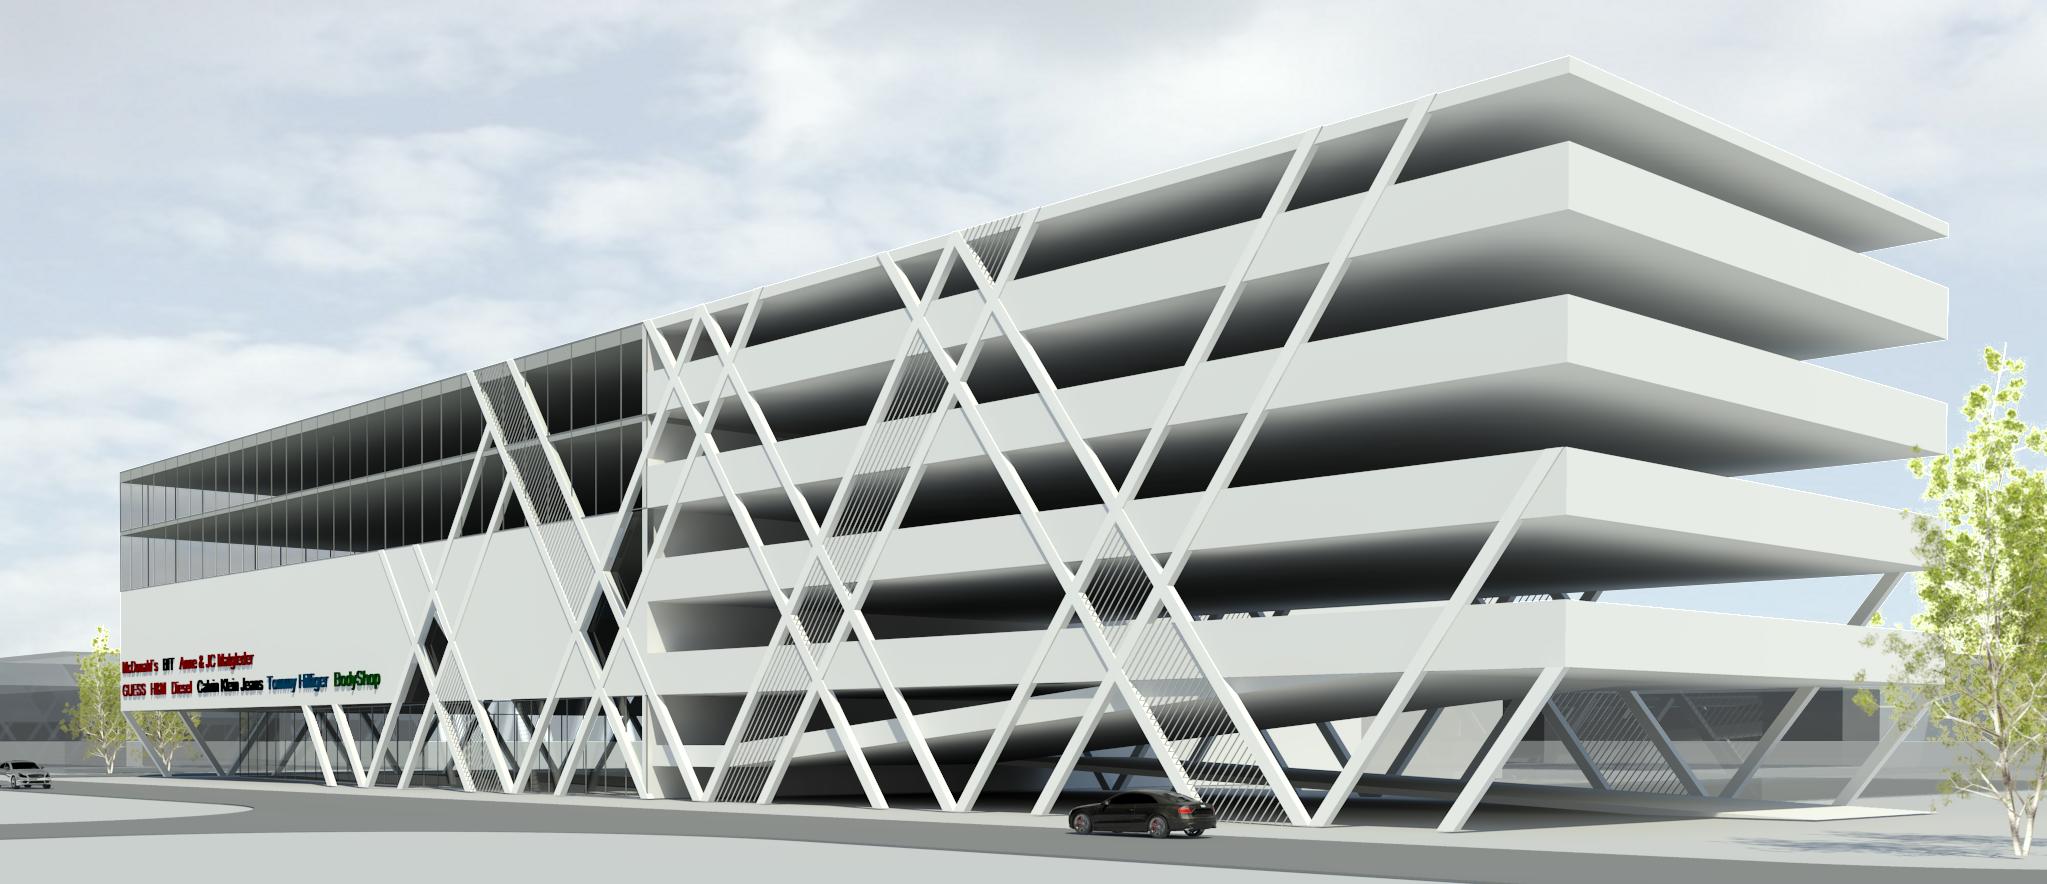 Bodo shopping center conceptual design